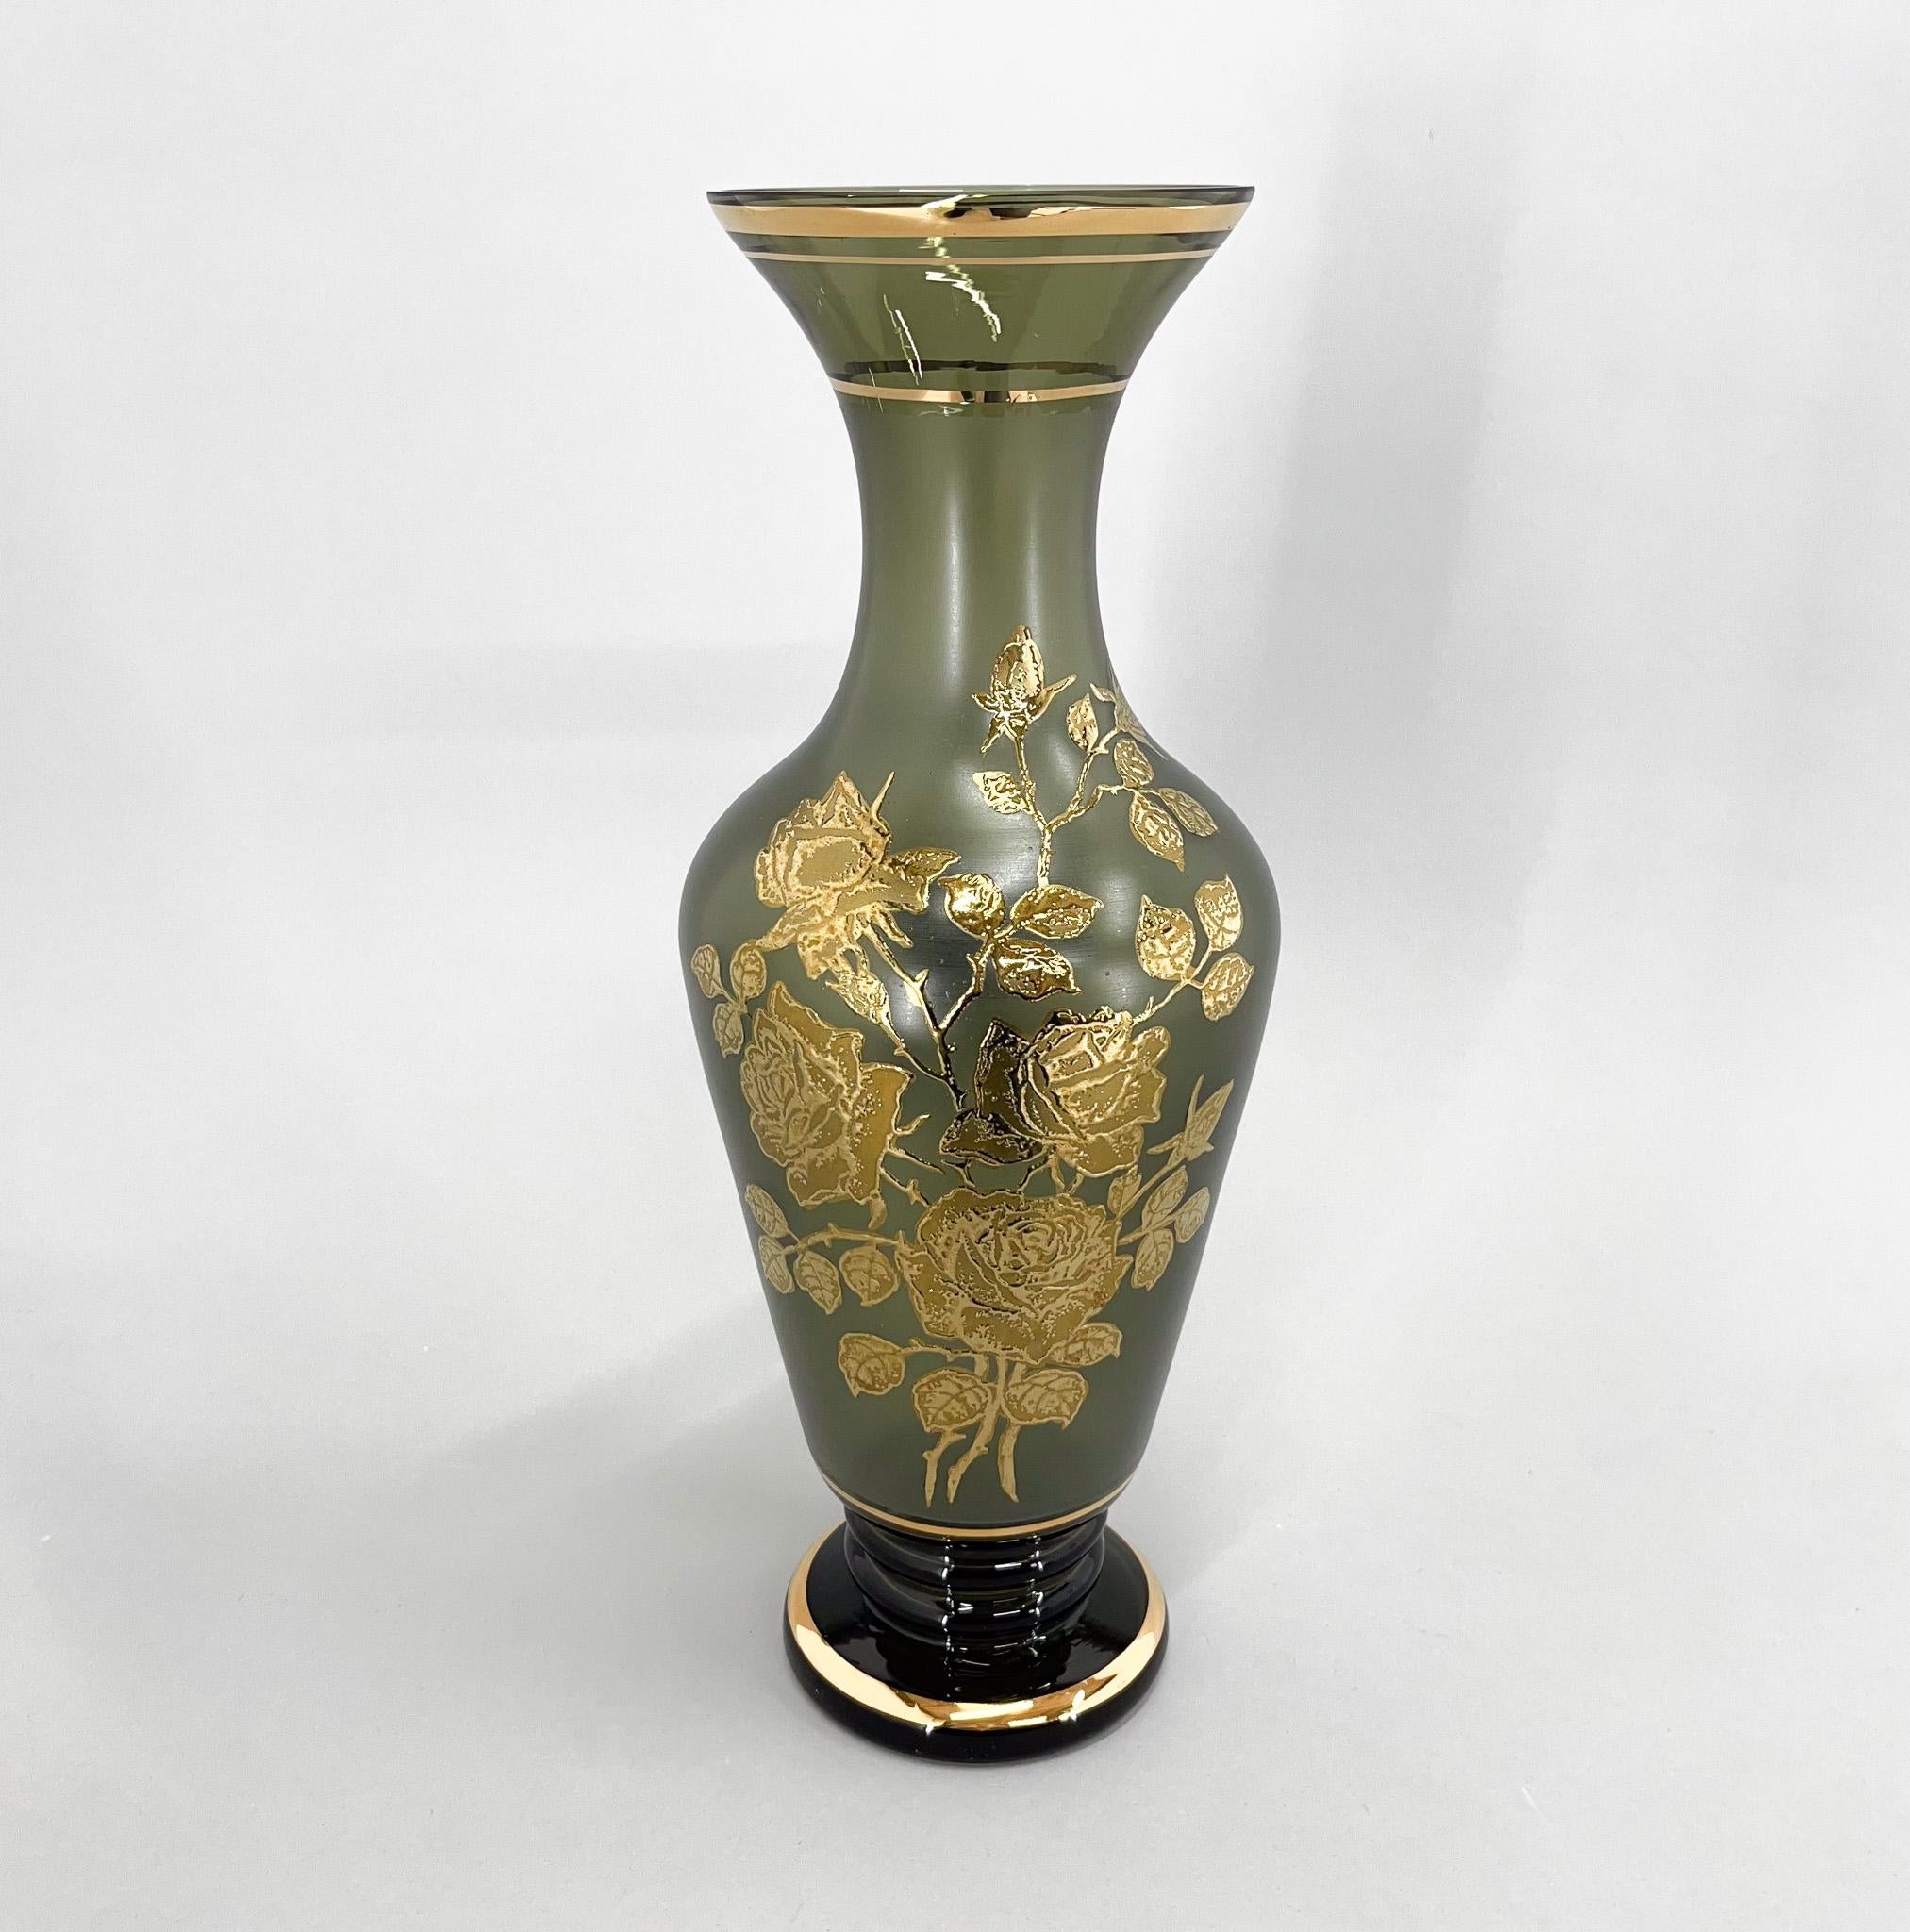 Grand vase vintage en verre vert de Bohème avec un décor de fleurs dorées et des rebords. Fabriqué dans l'ancienne Tchécoslovaquie.